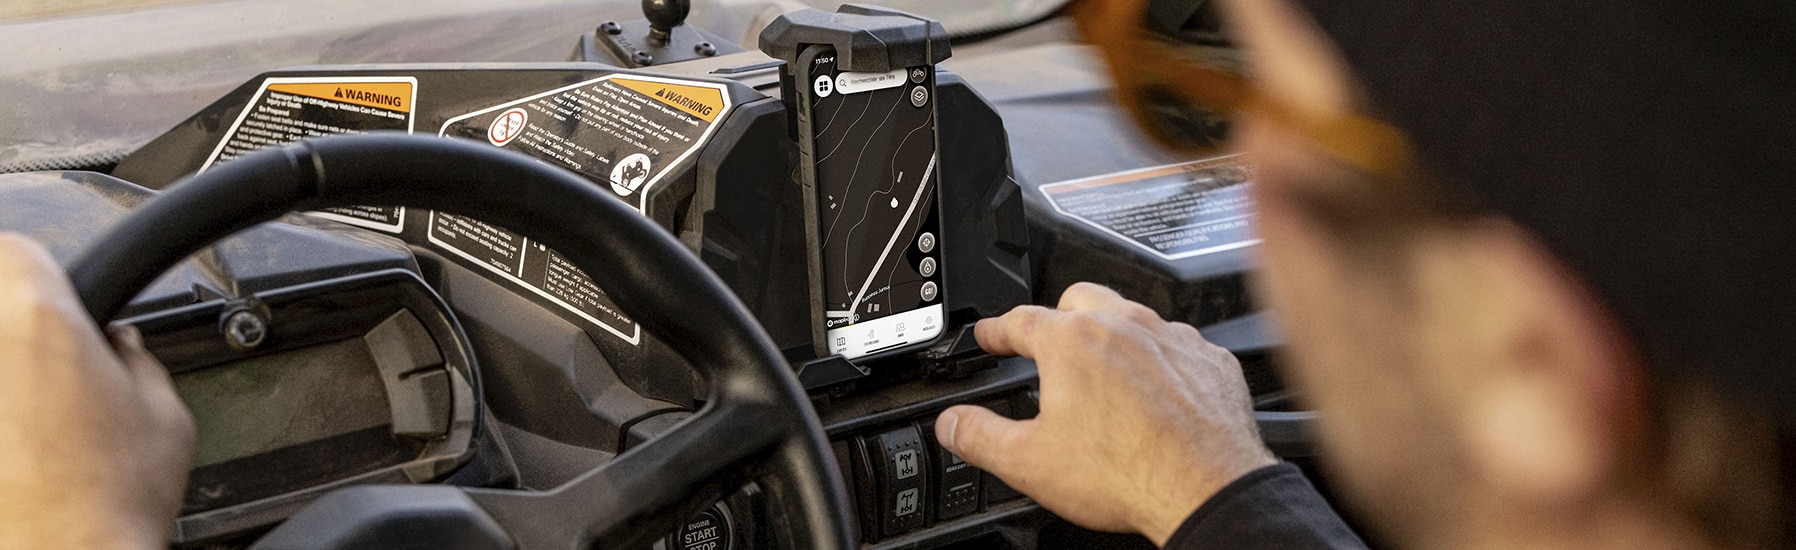 Motociclista utilizando el BRP GO! en un teléfono móvil colocado en un soporte para teléfono